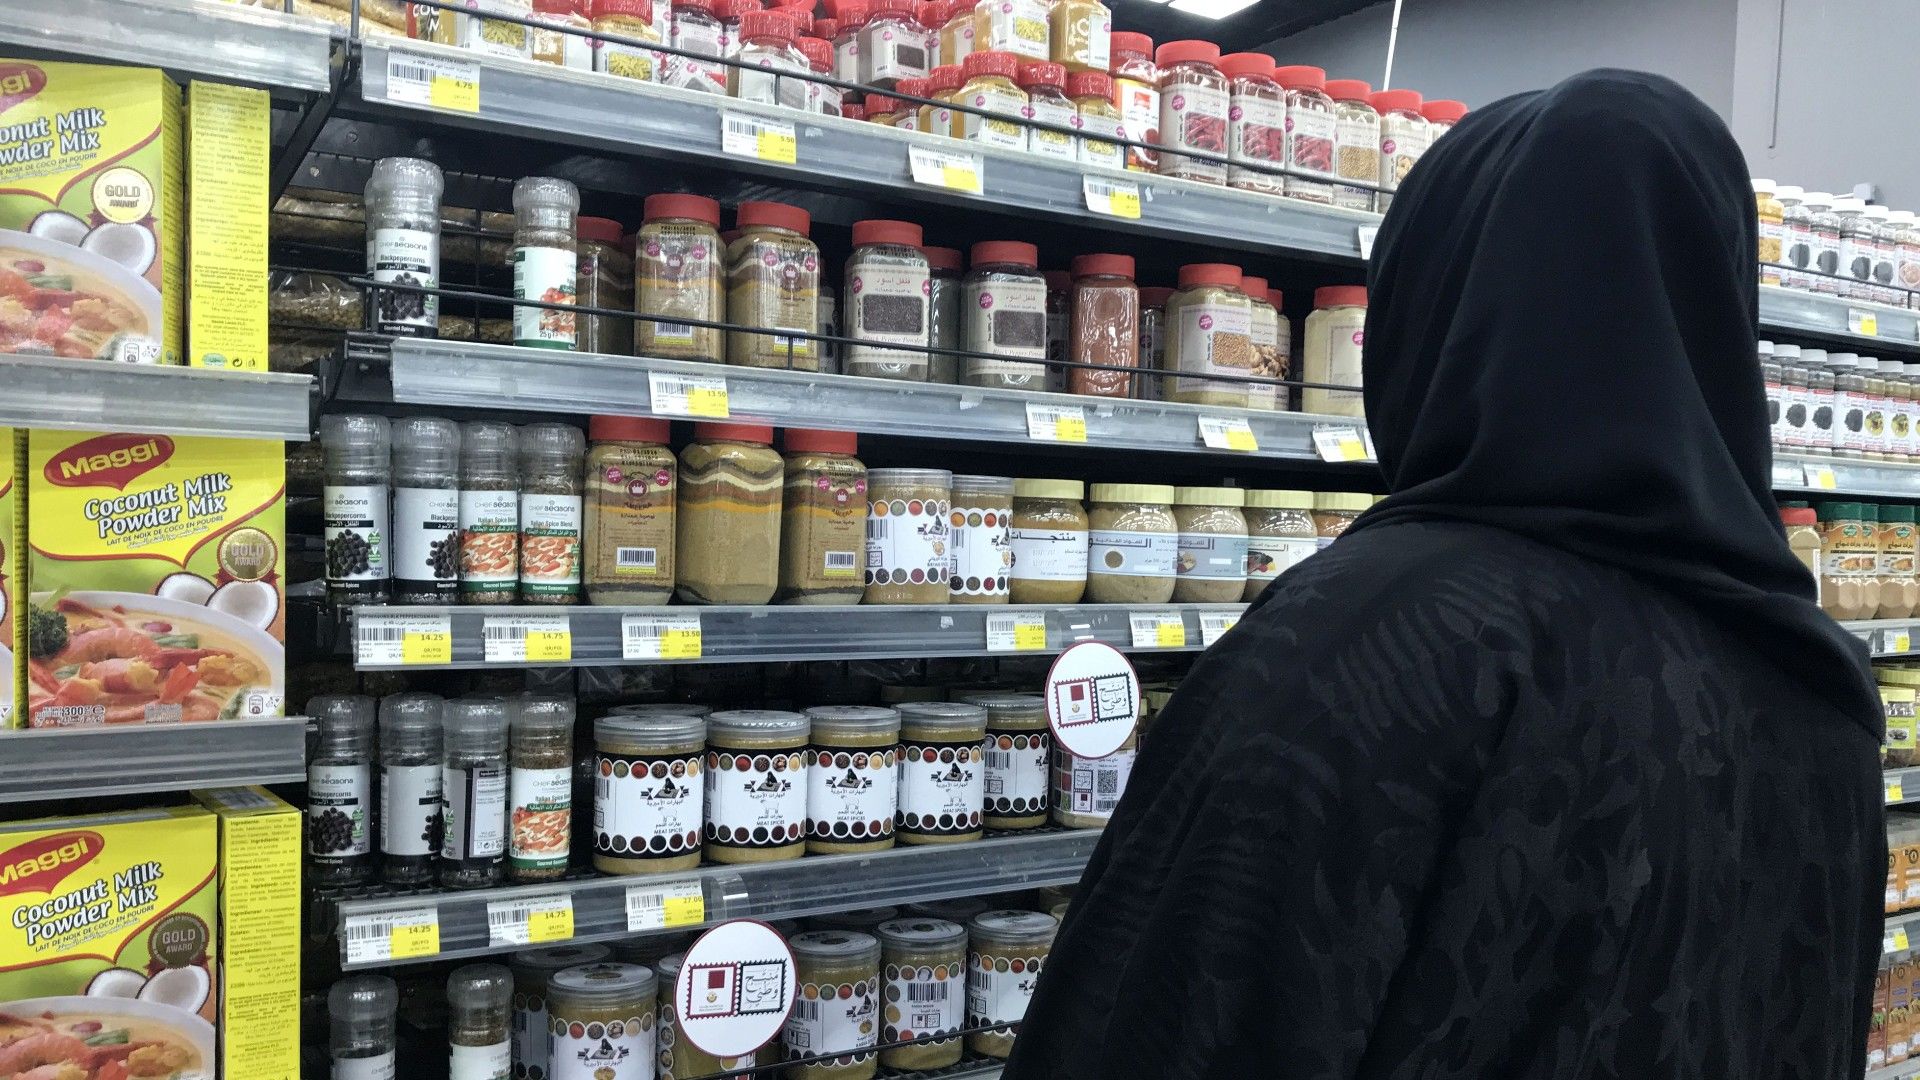 Descifrando Qatar 2022: Lista de precios aproximados en un supermercado qatarí